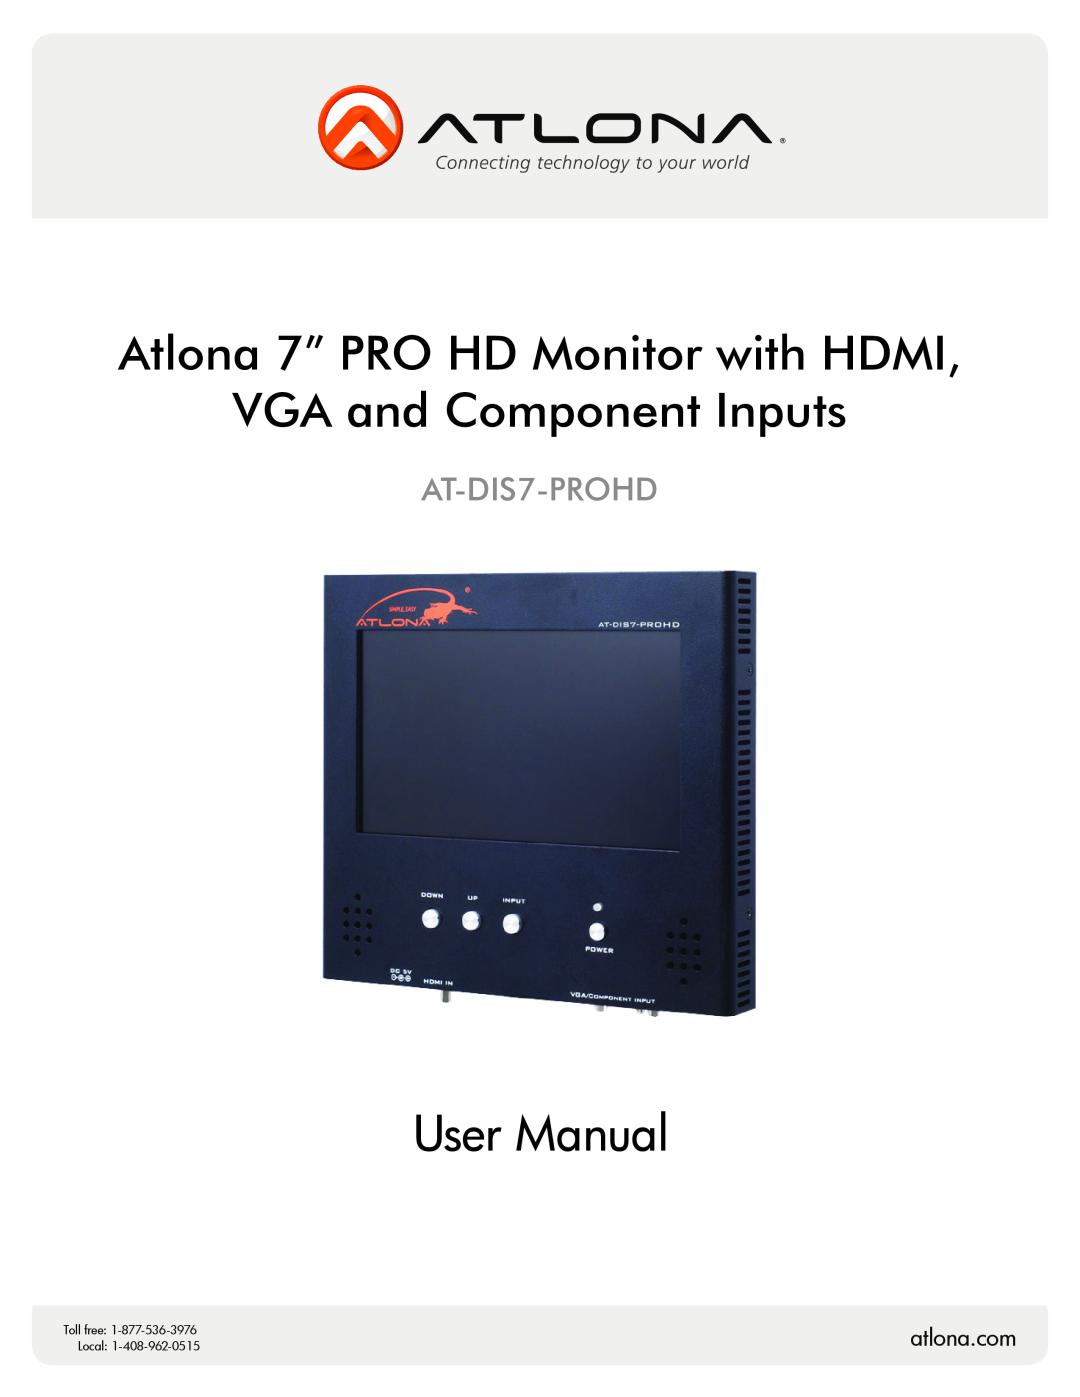 Atlona AT-DIS7-PROHD user manual atlona.com, Atlona 7” PRO HD Monitor with HDMI, DVI, VGA and Component Inputs, Local 